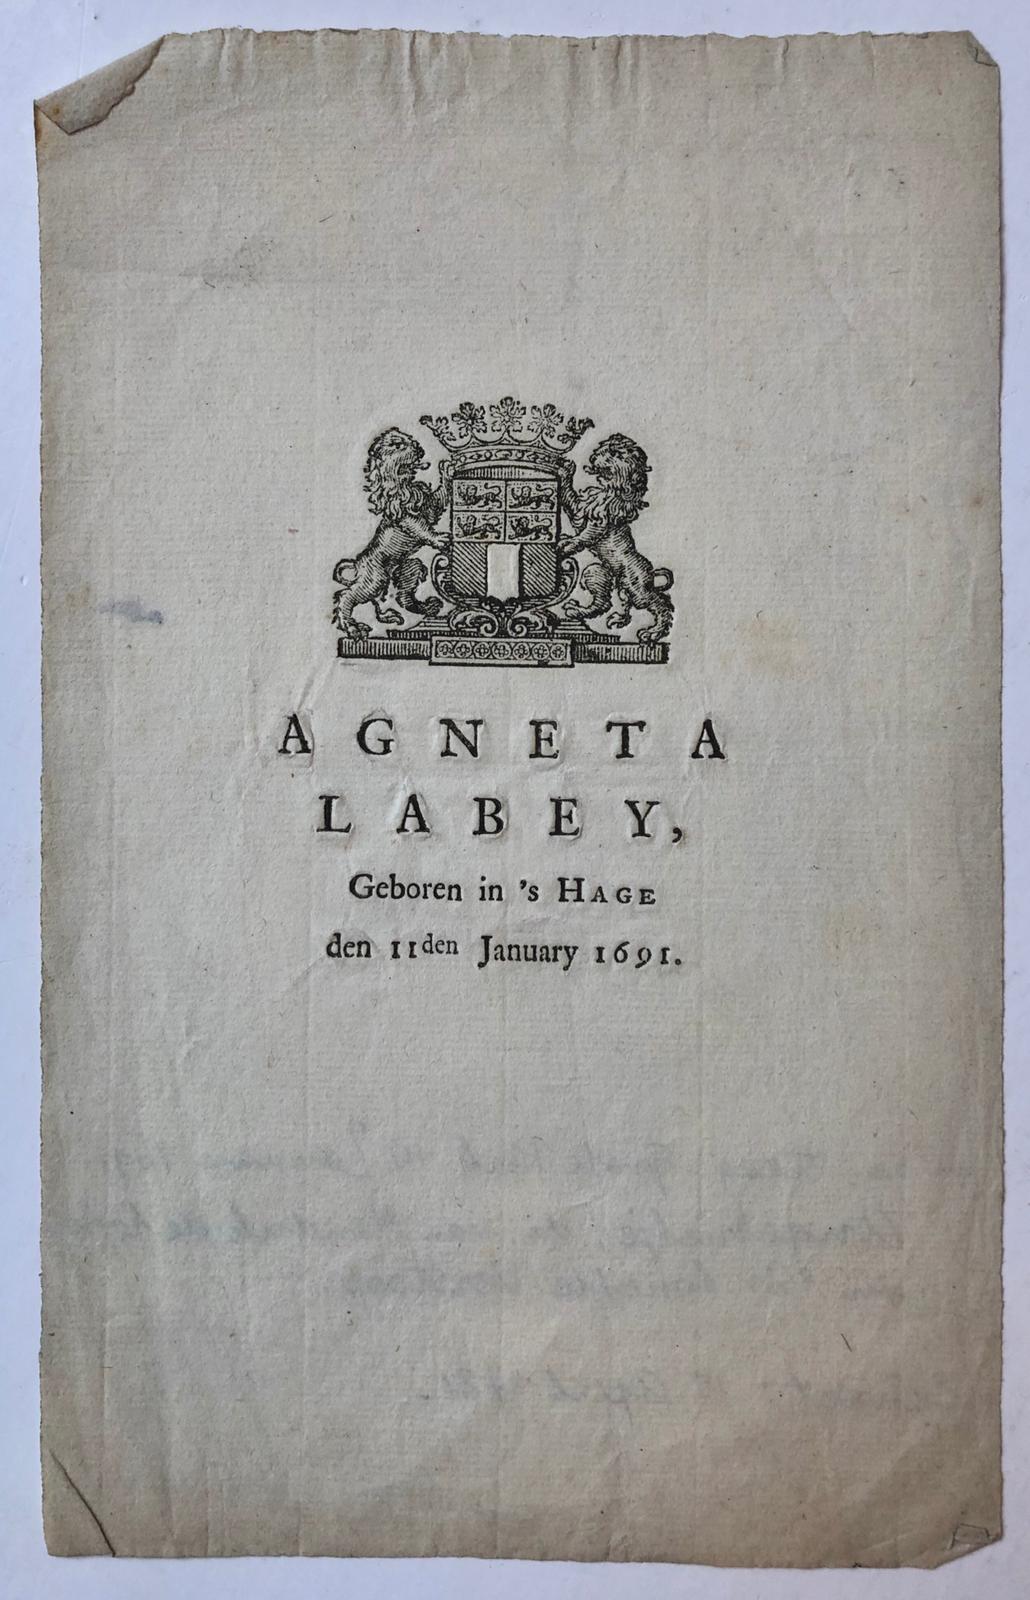 [Printed publication 1691] Gedrukt blaadje, 8°, met het wapen van de stad Rotterdam en daaronder “Agneta Labey, geboren in ‘s Hage den 11den January 1691”.